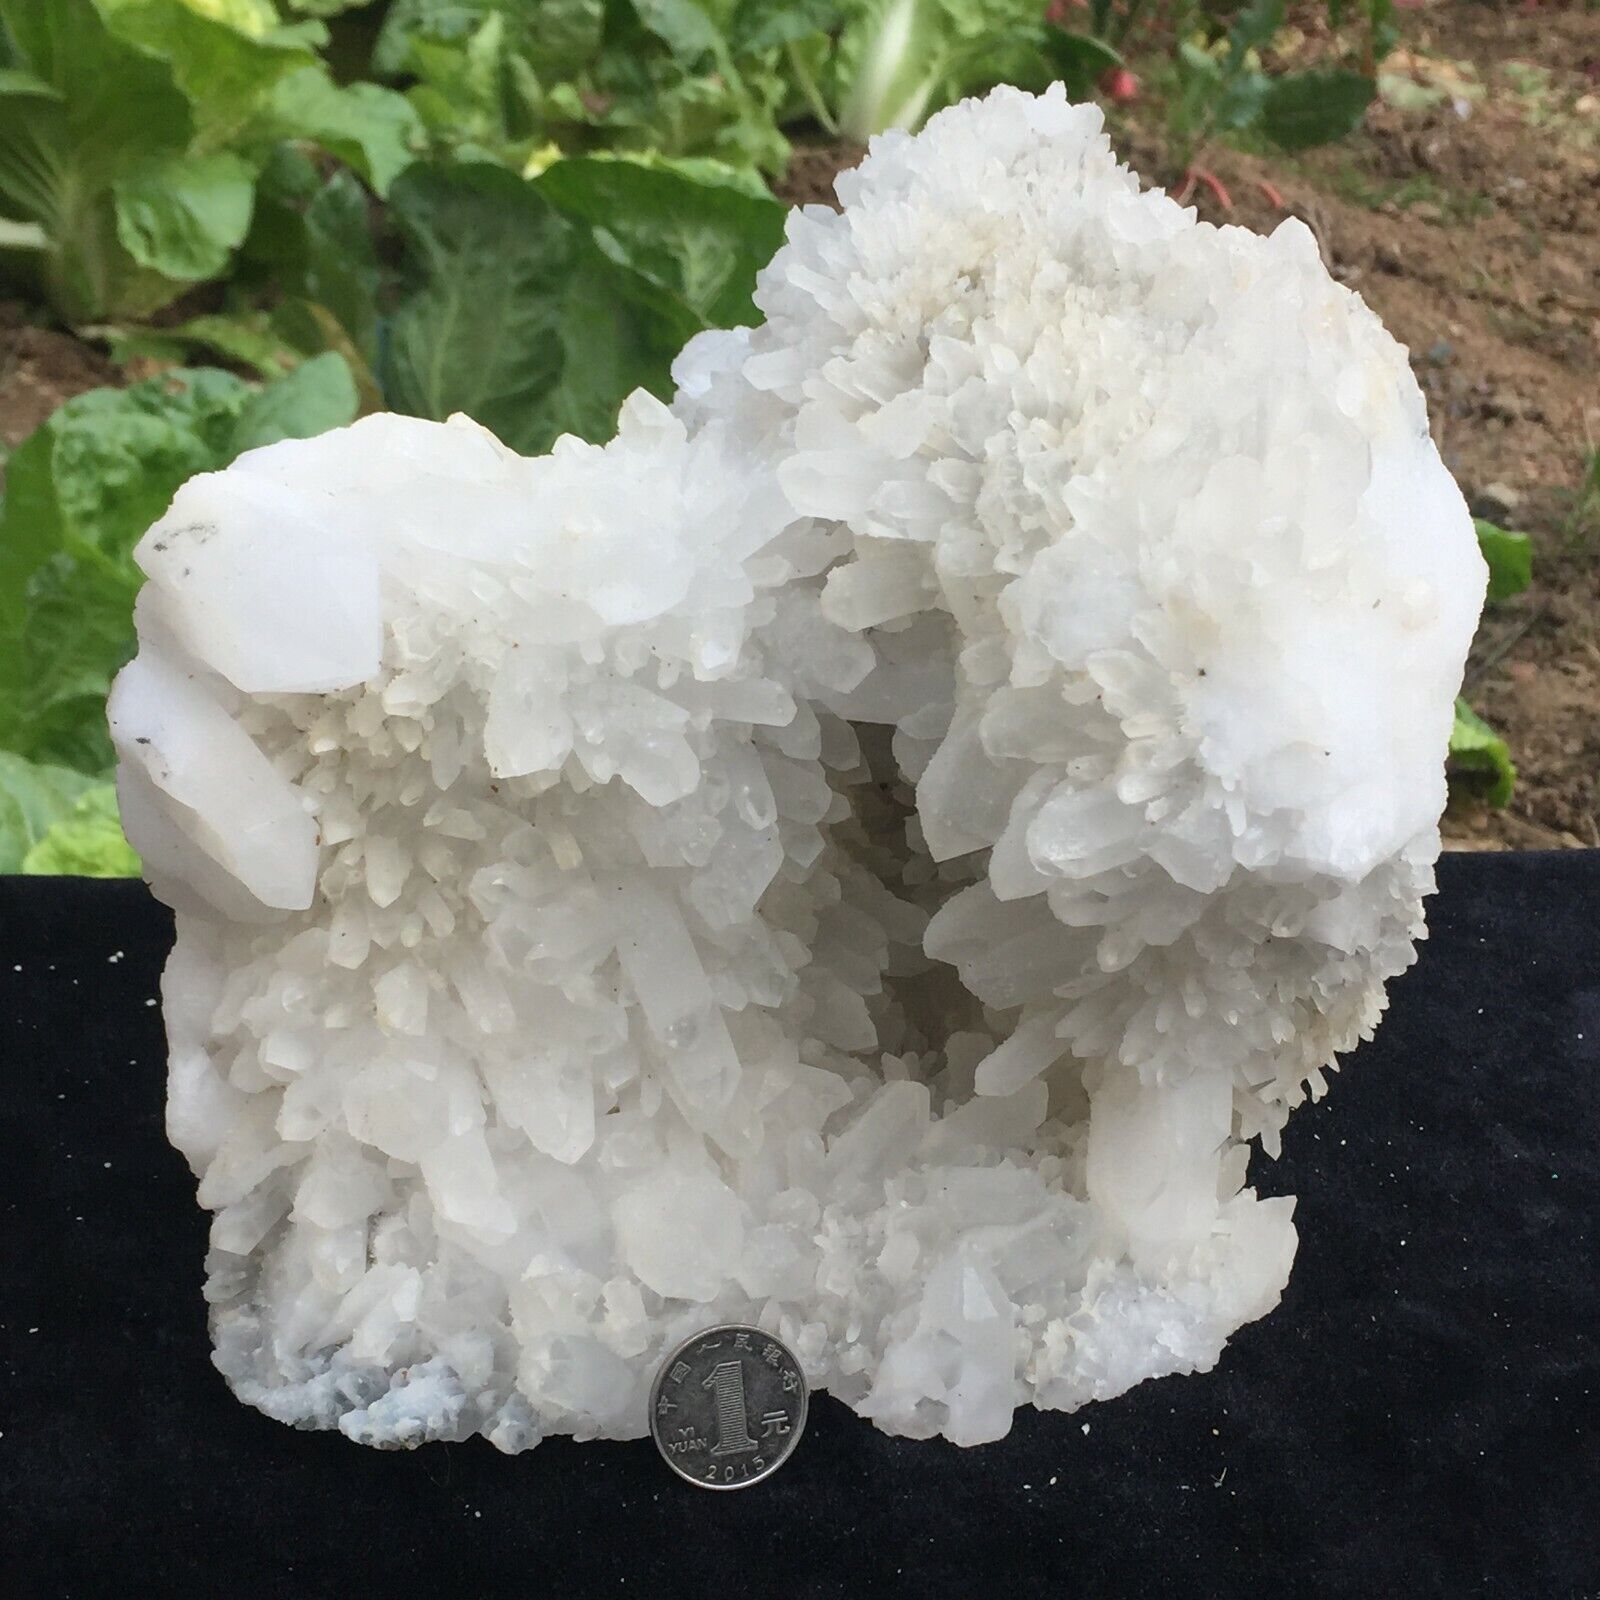 4970g Natural Large White Quartz Crystal Cluster Mineral Specimen Healing